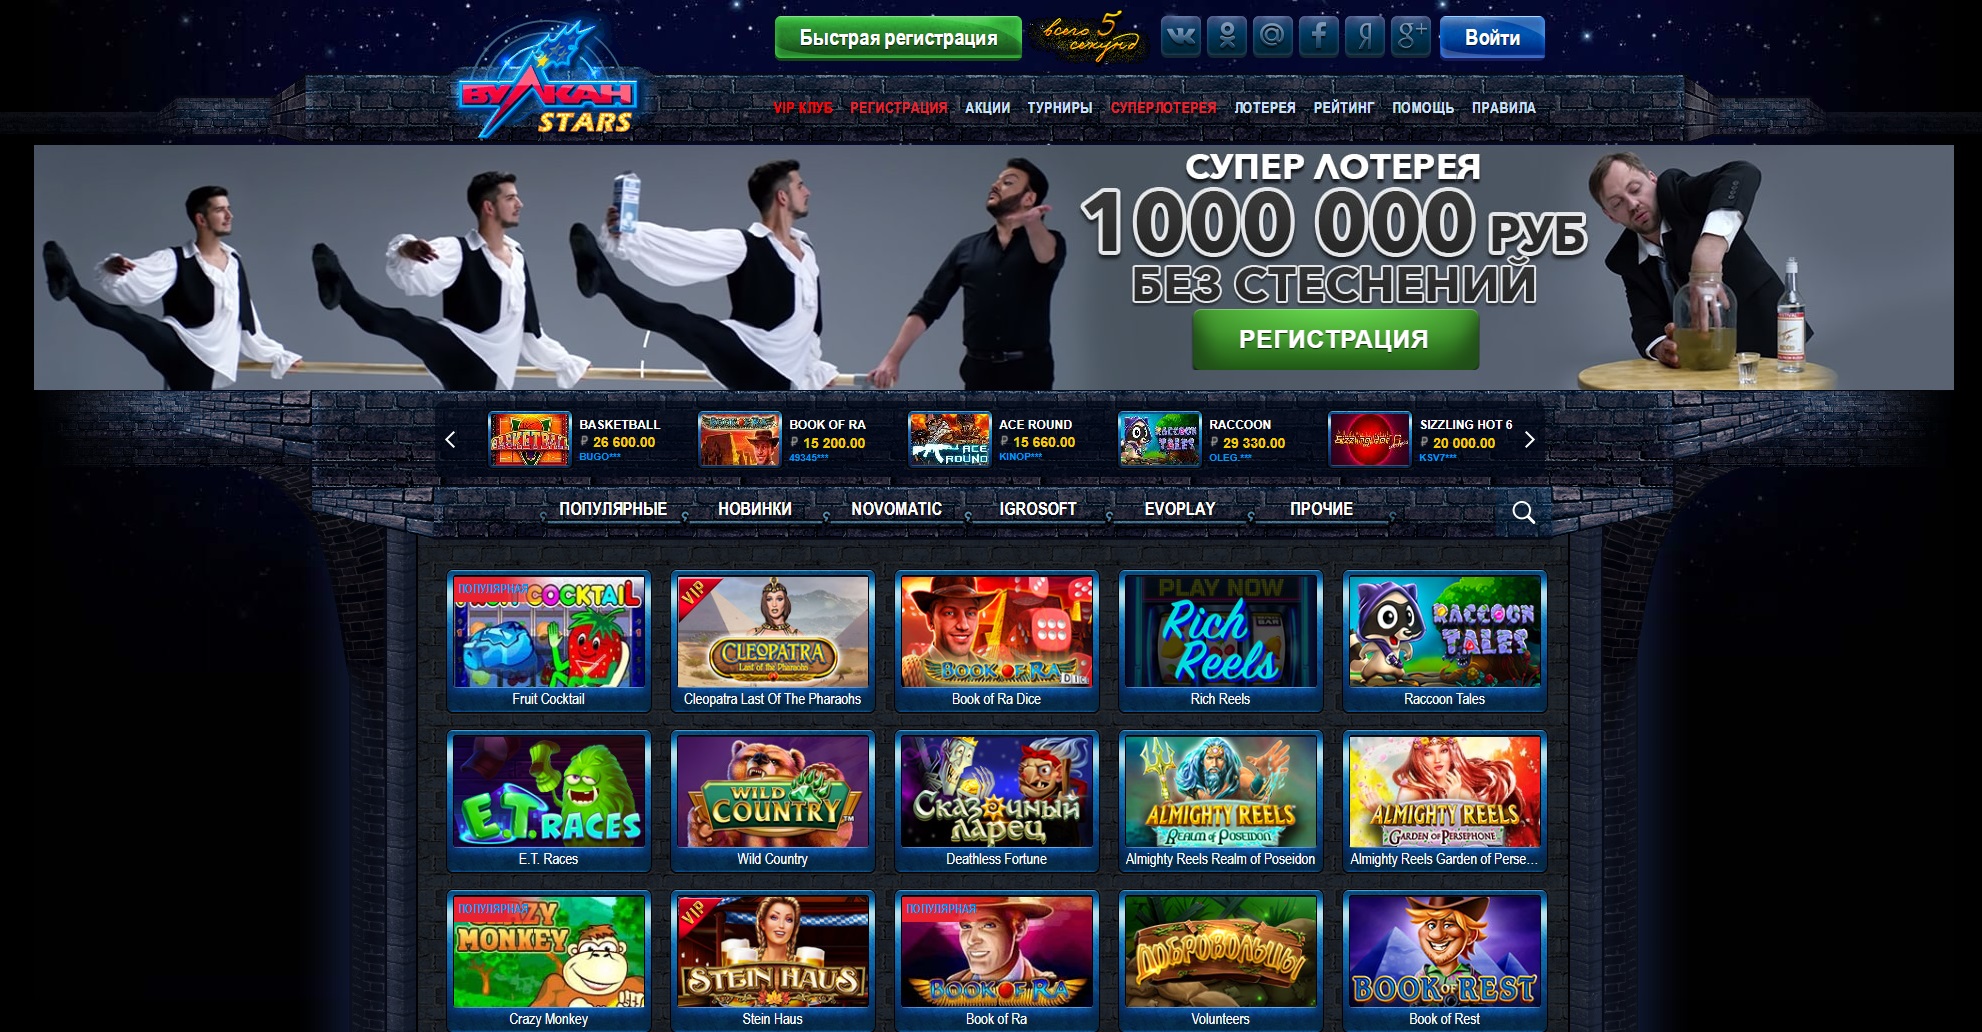 Лучшие онлайн казино россии к casino xyz максбет отзывы 0 1